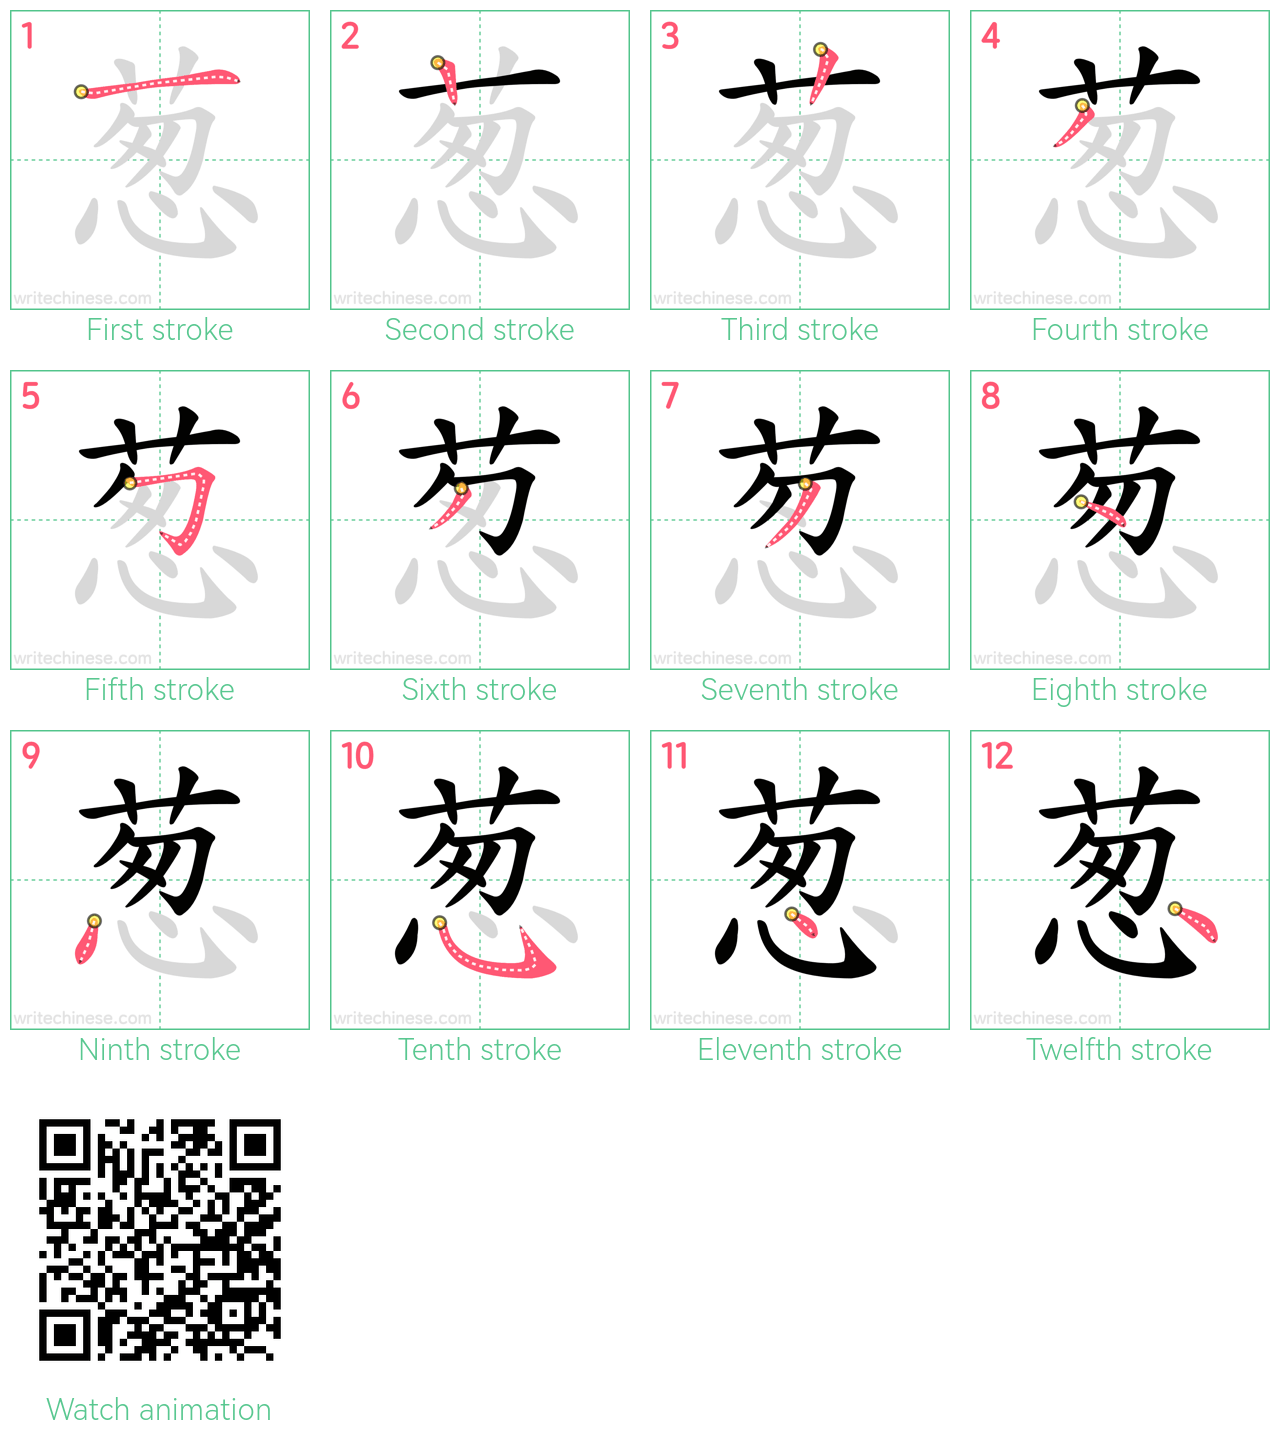 葱 step-by-step stroke order diagrams